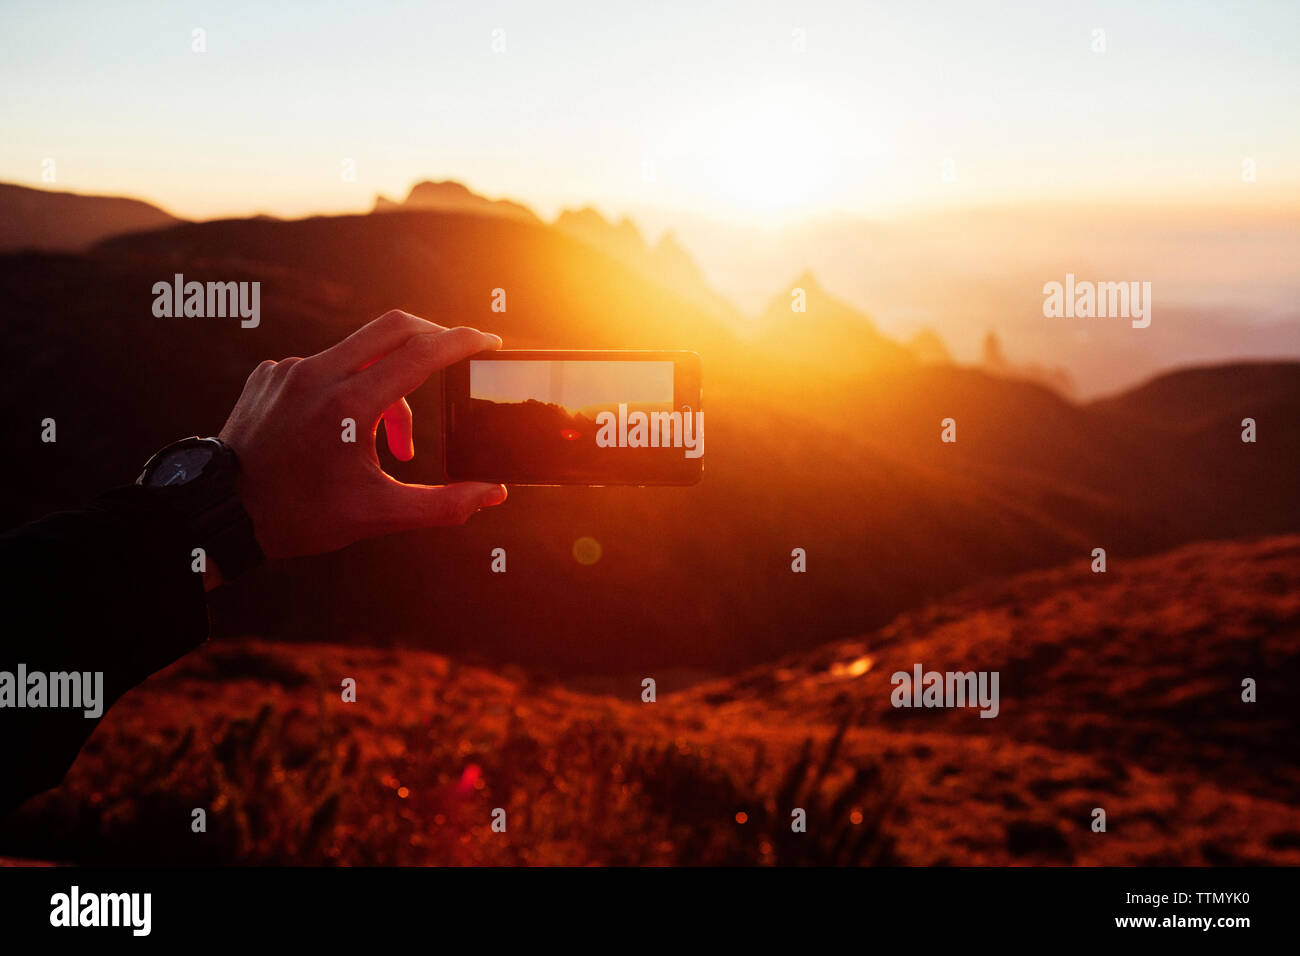 Imagen recortada del hombre fotografiando las montañas a través de teléfono inteligente durante la puesta de sol Foto de stock